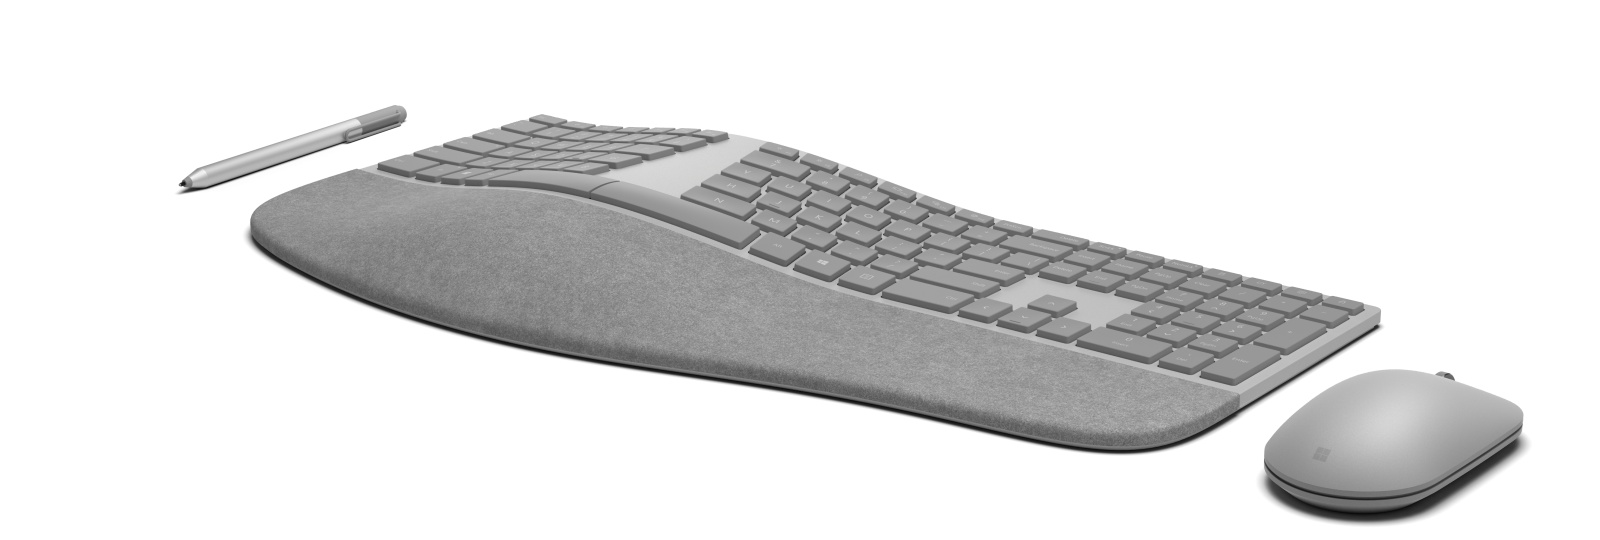 Der står Surface på al hardwaren. Her er fra venstre Surface Pen, Surface Ergonomic Keyboard og Surface Mouse. Foto: Microsoft